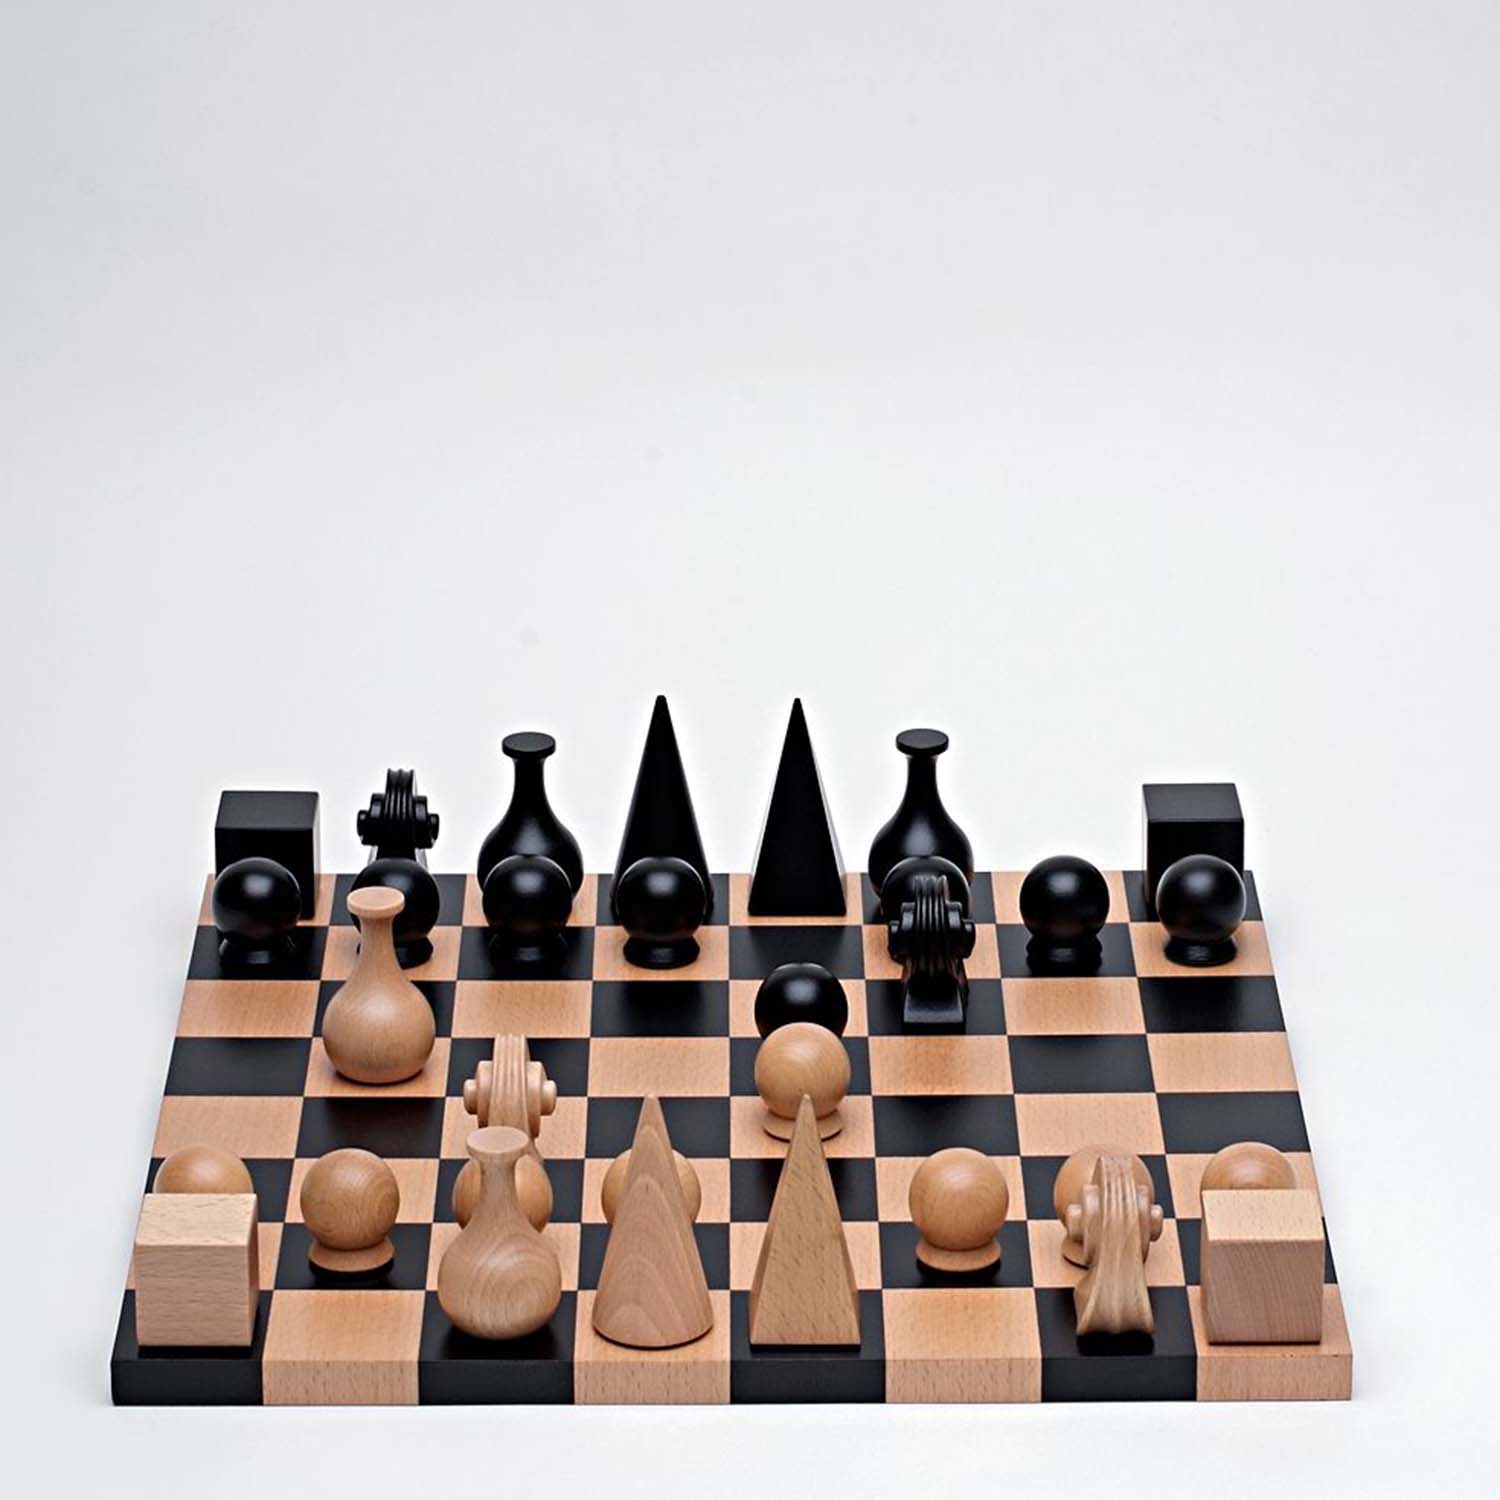 תמונה של שחמט על ידי מאן ריי